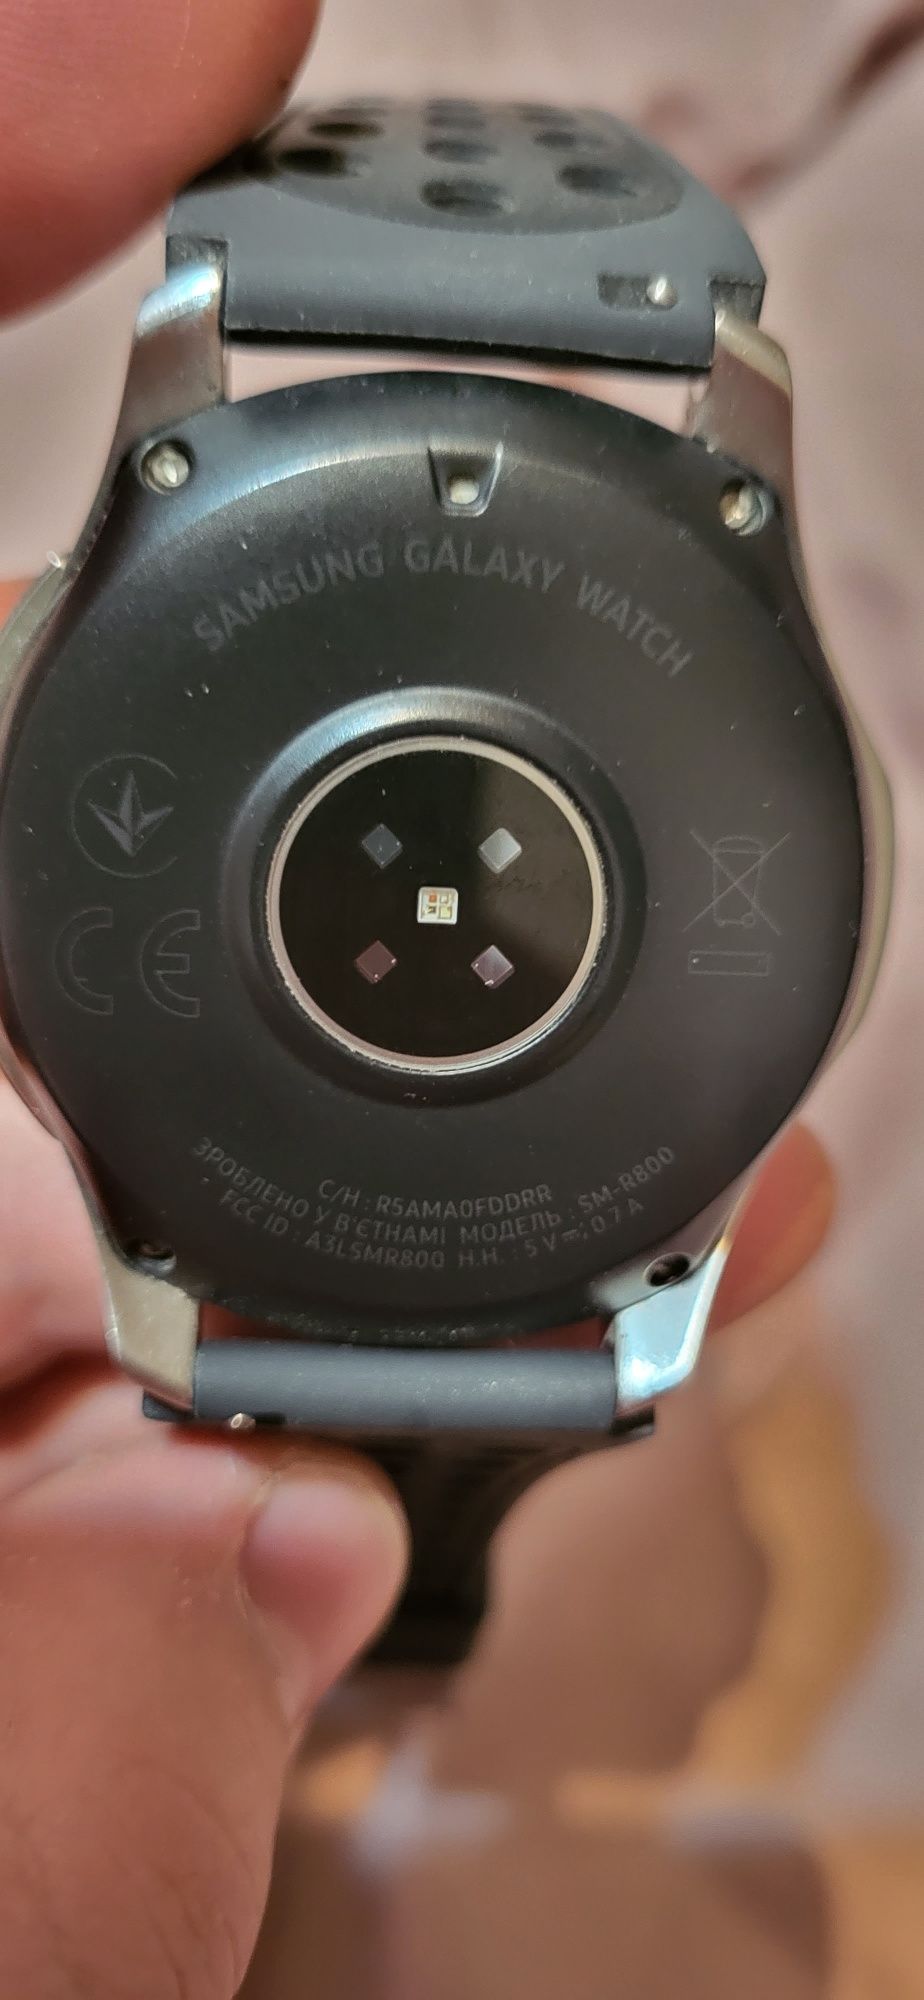 Sm r800 Samsung galaxy watch